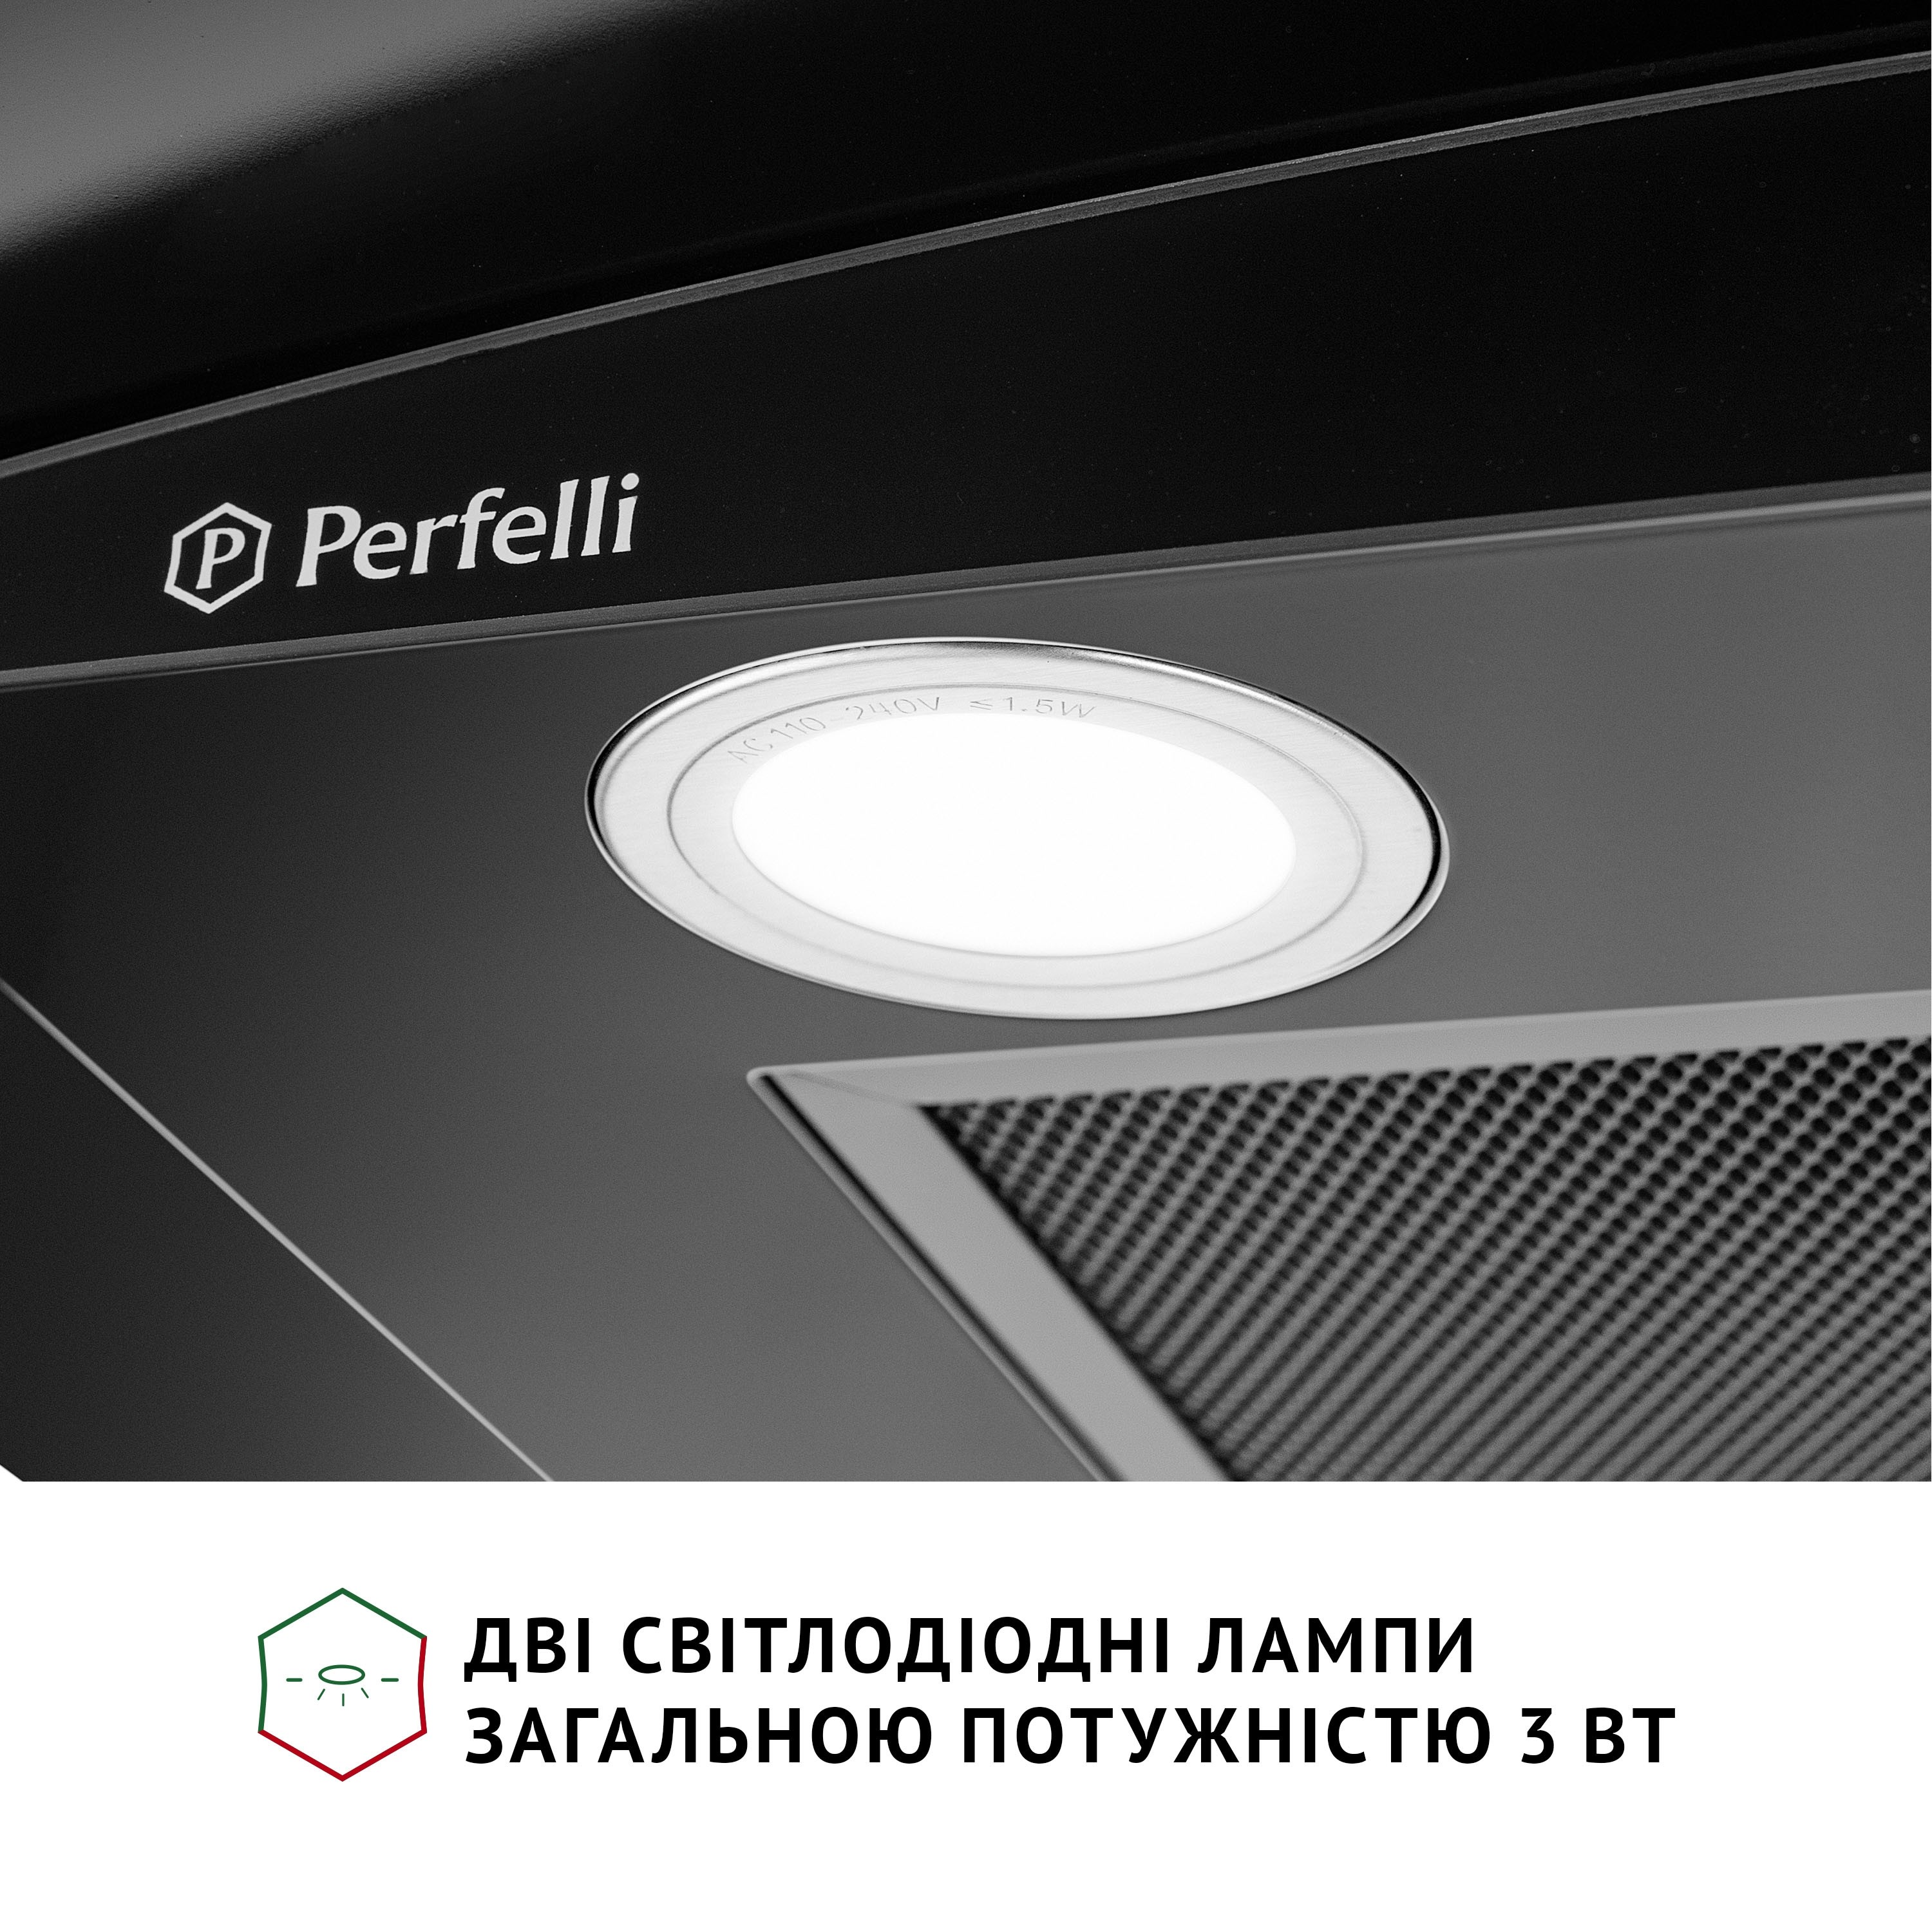 продаємо Perfelli Grassi 6HMB Nero в Україні - фото 4